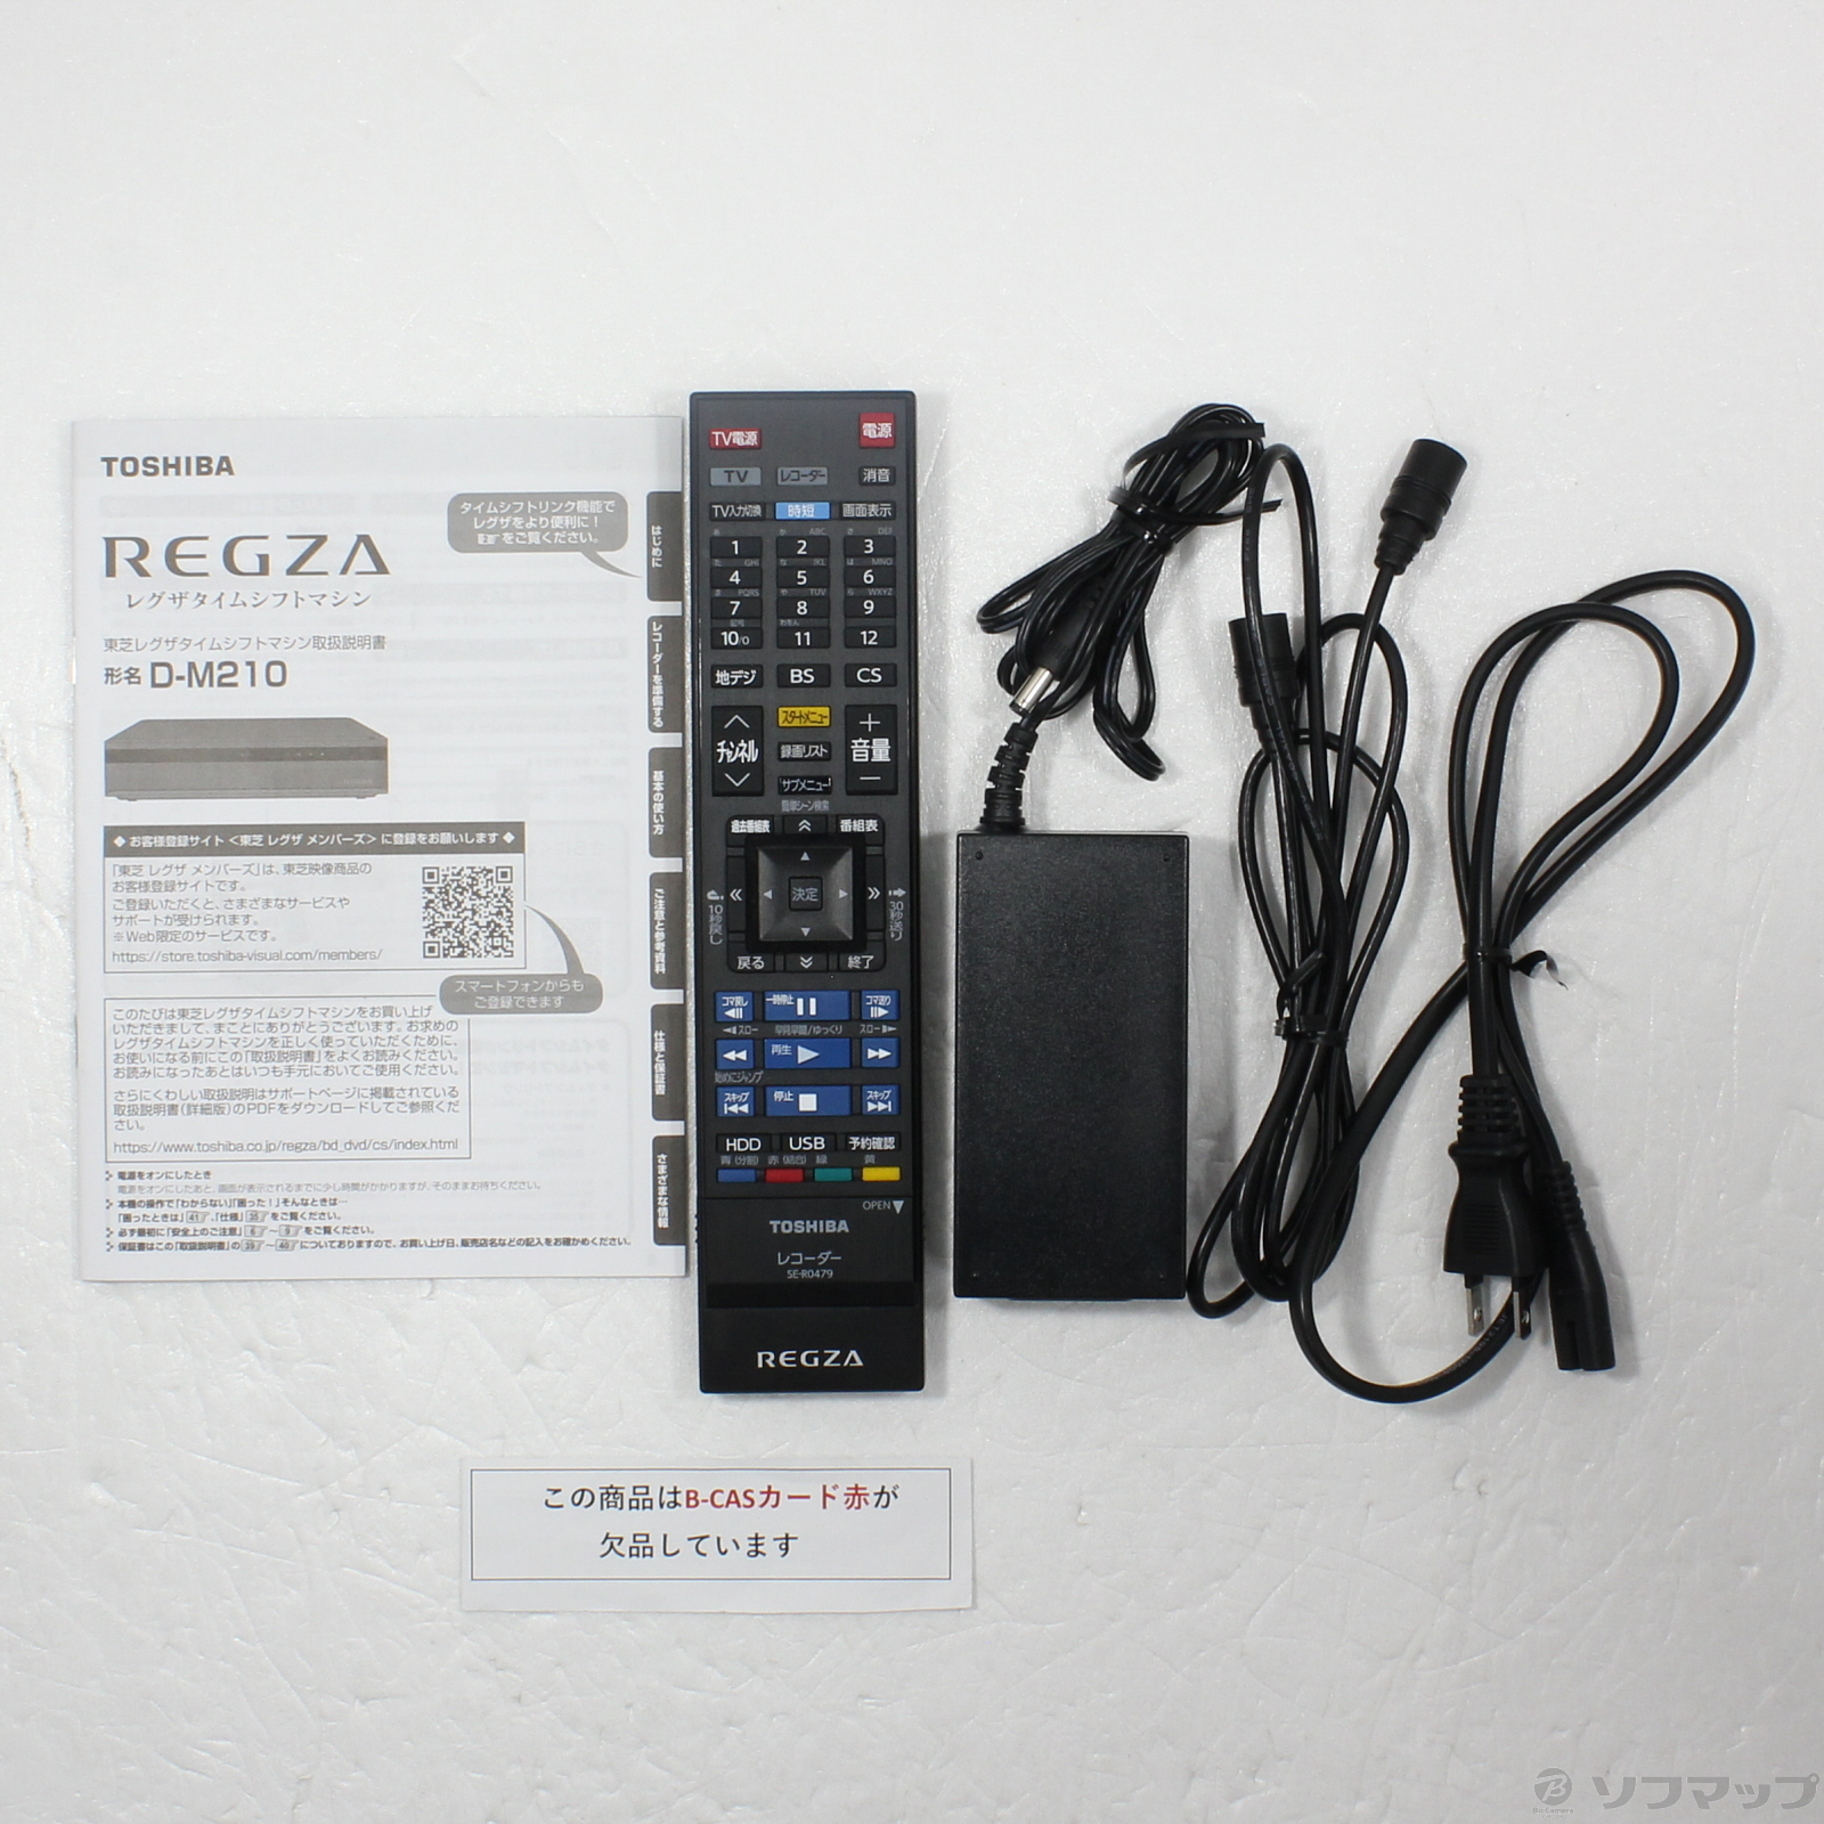 東芝 REGZA タイムシフトマシン ハードディスク 2TB D-M210 - ブルーレイレコーダー